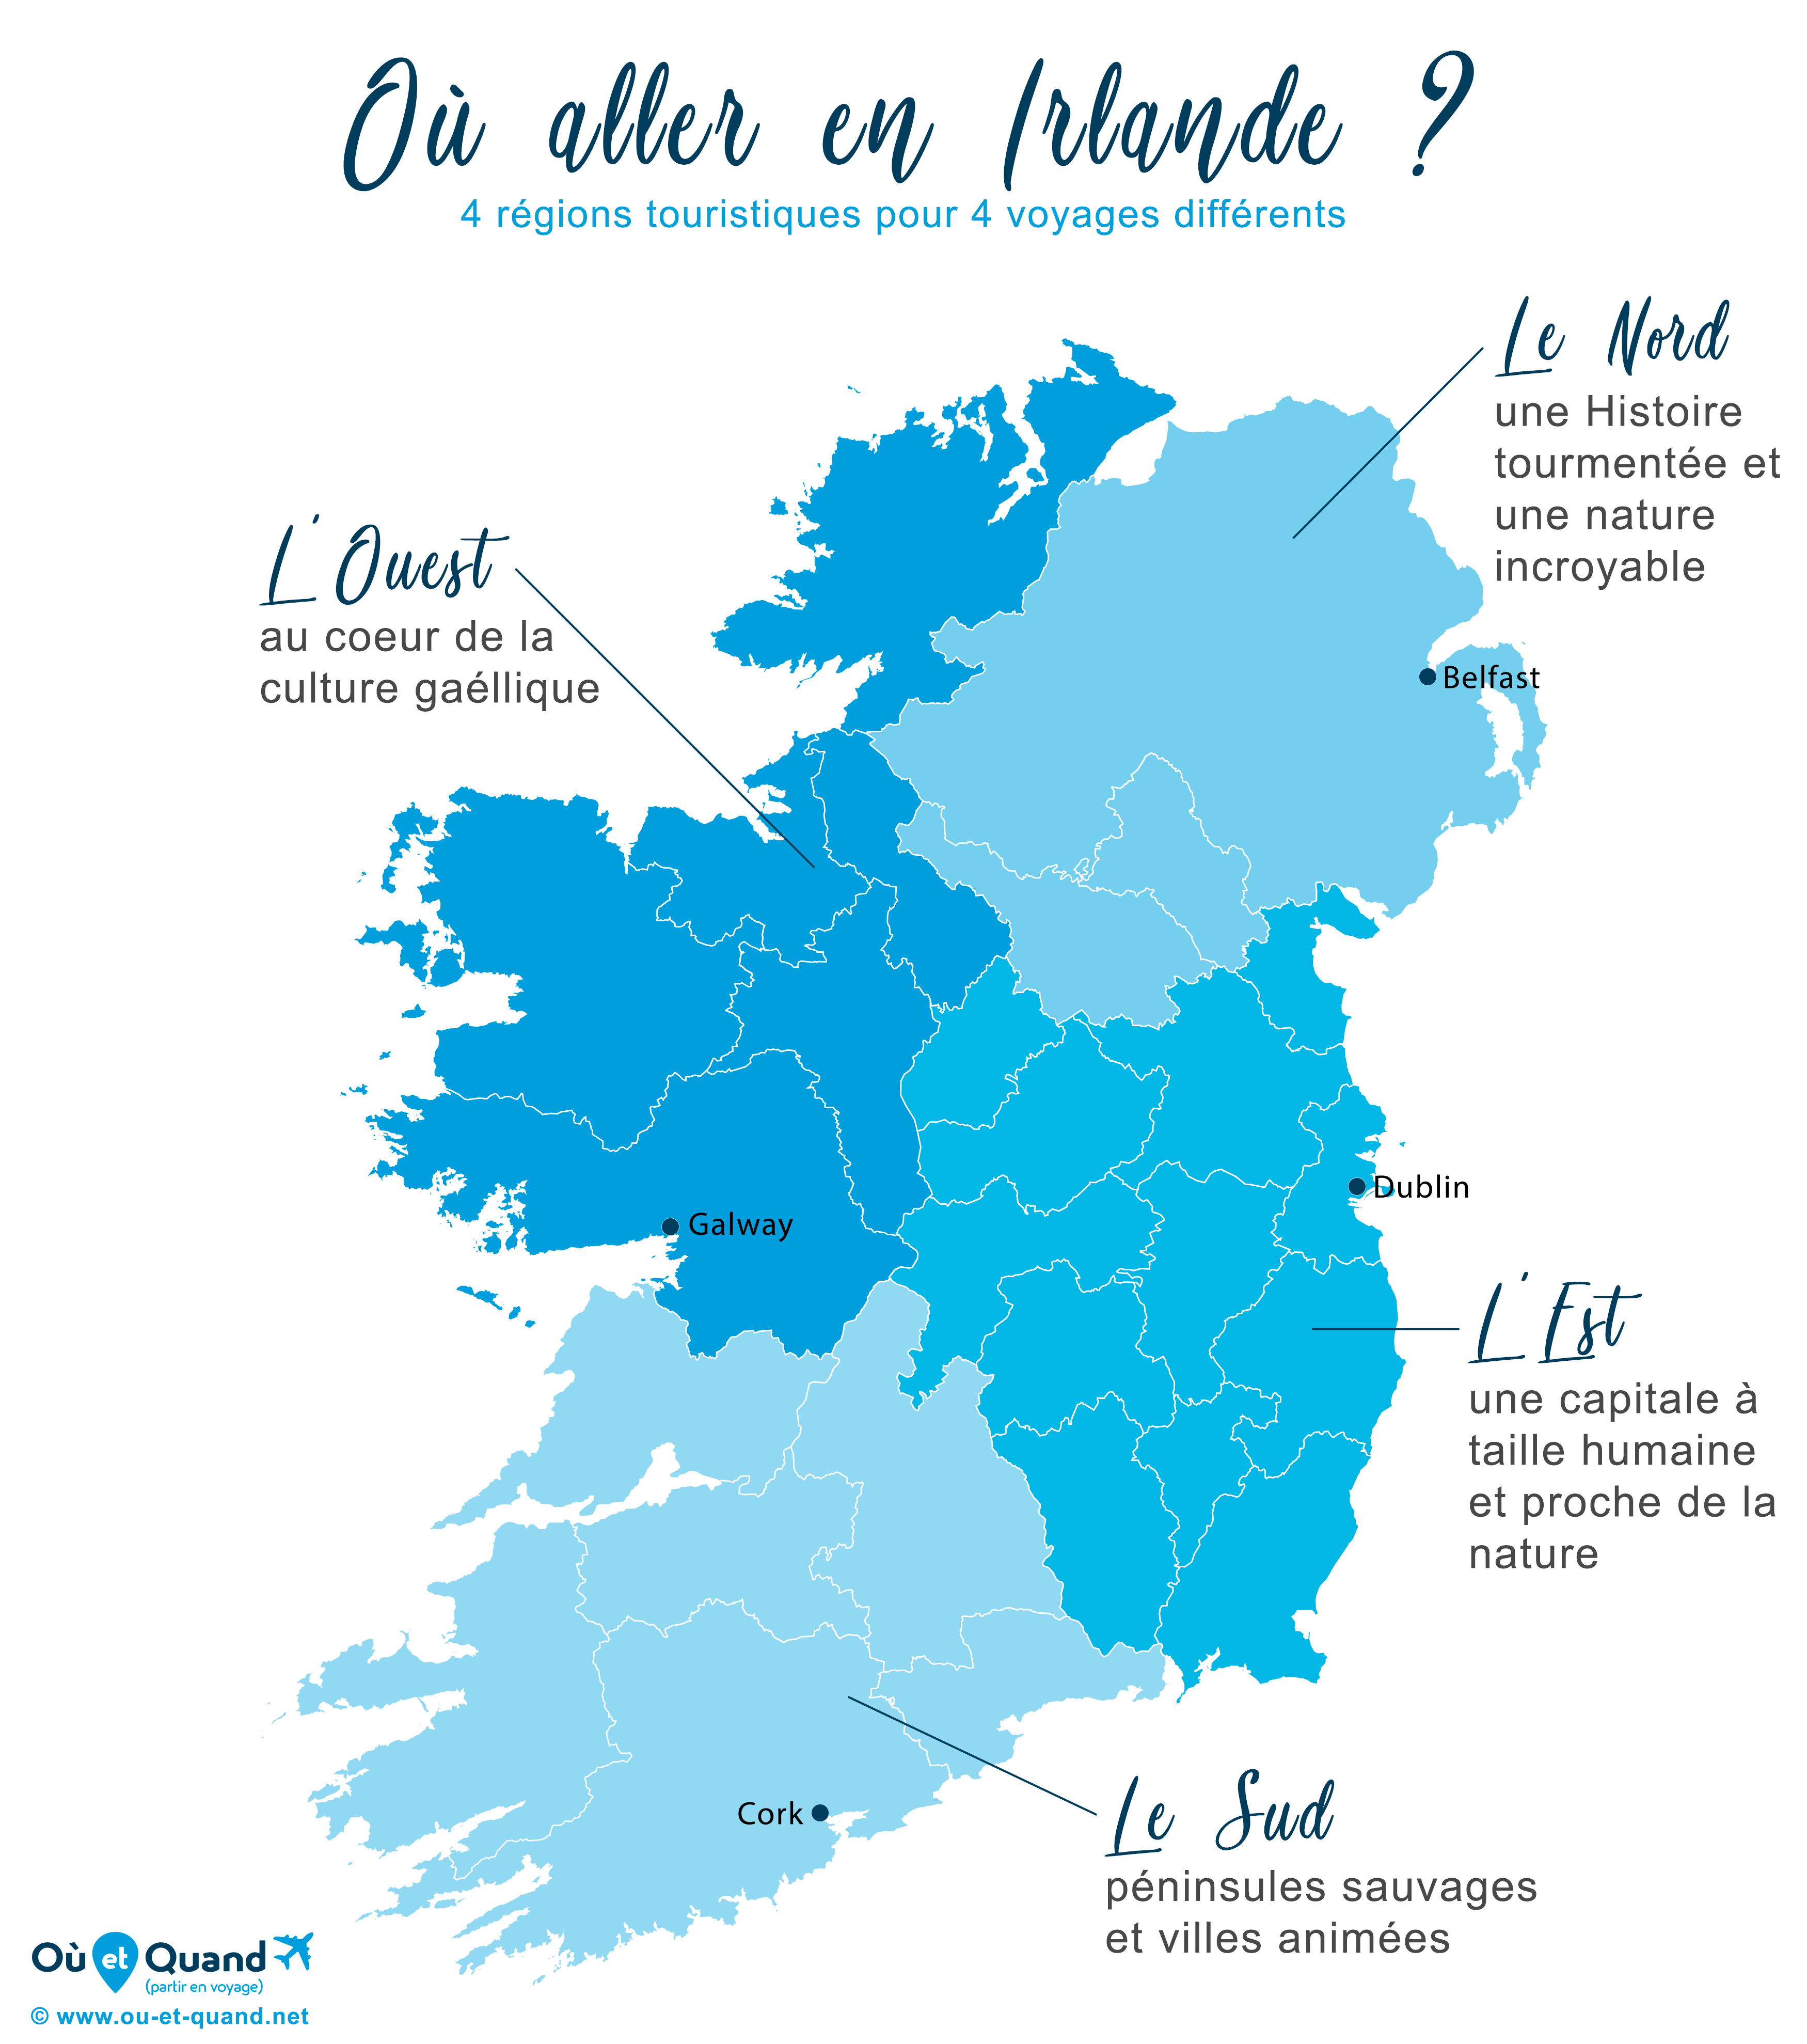 Carte des régions touristiques à visiter en Irlande